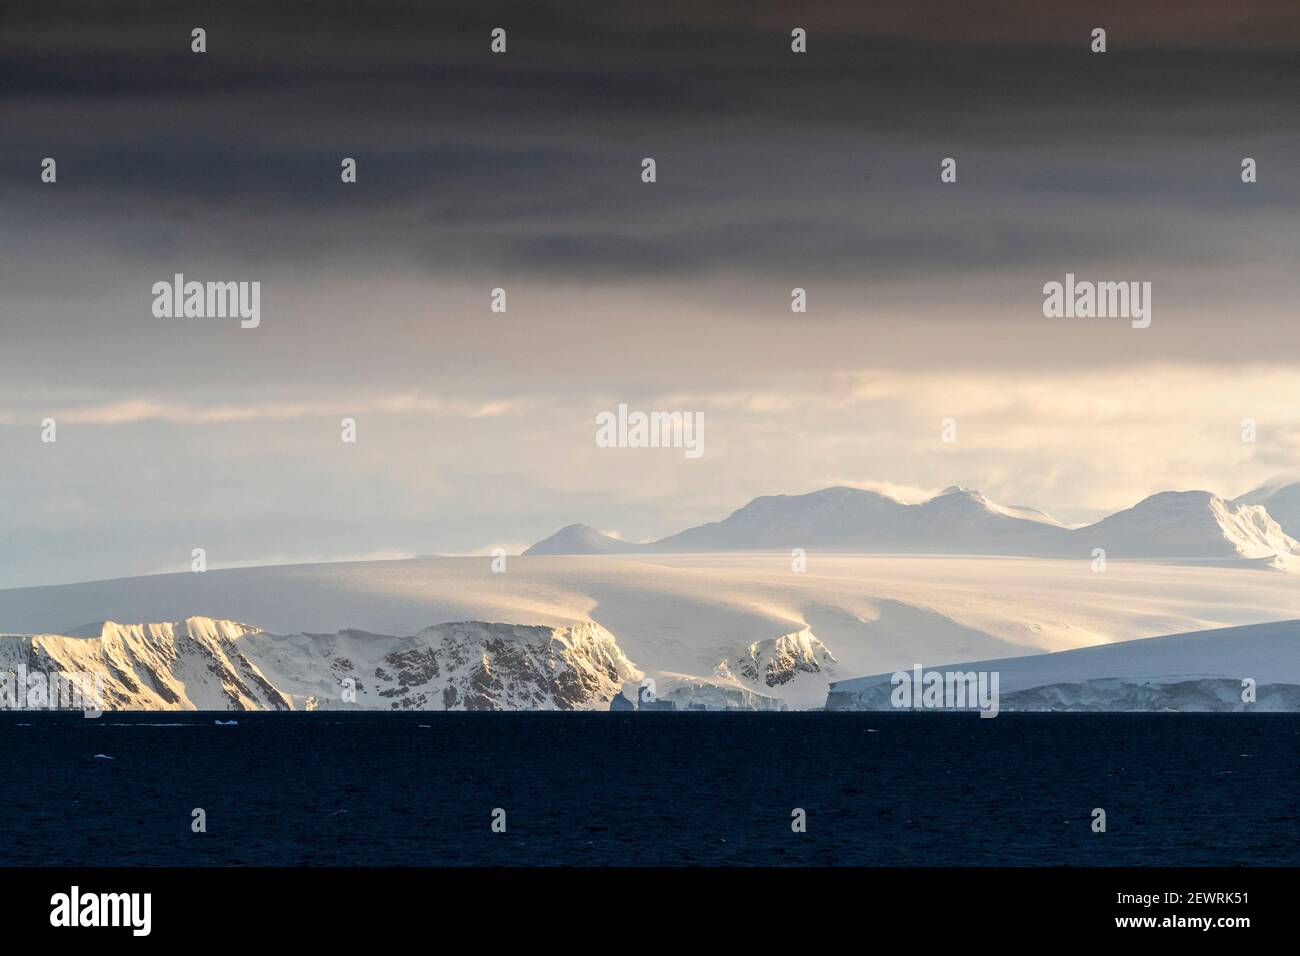 Lever du soleil sur des montagnes enneigées et des glaciers en eau tidwater dans le port de Mikkelsen, l'île Trinity, l'Antarctique, les régions polaires Banque D'Images